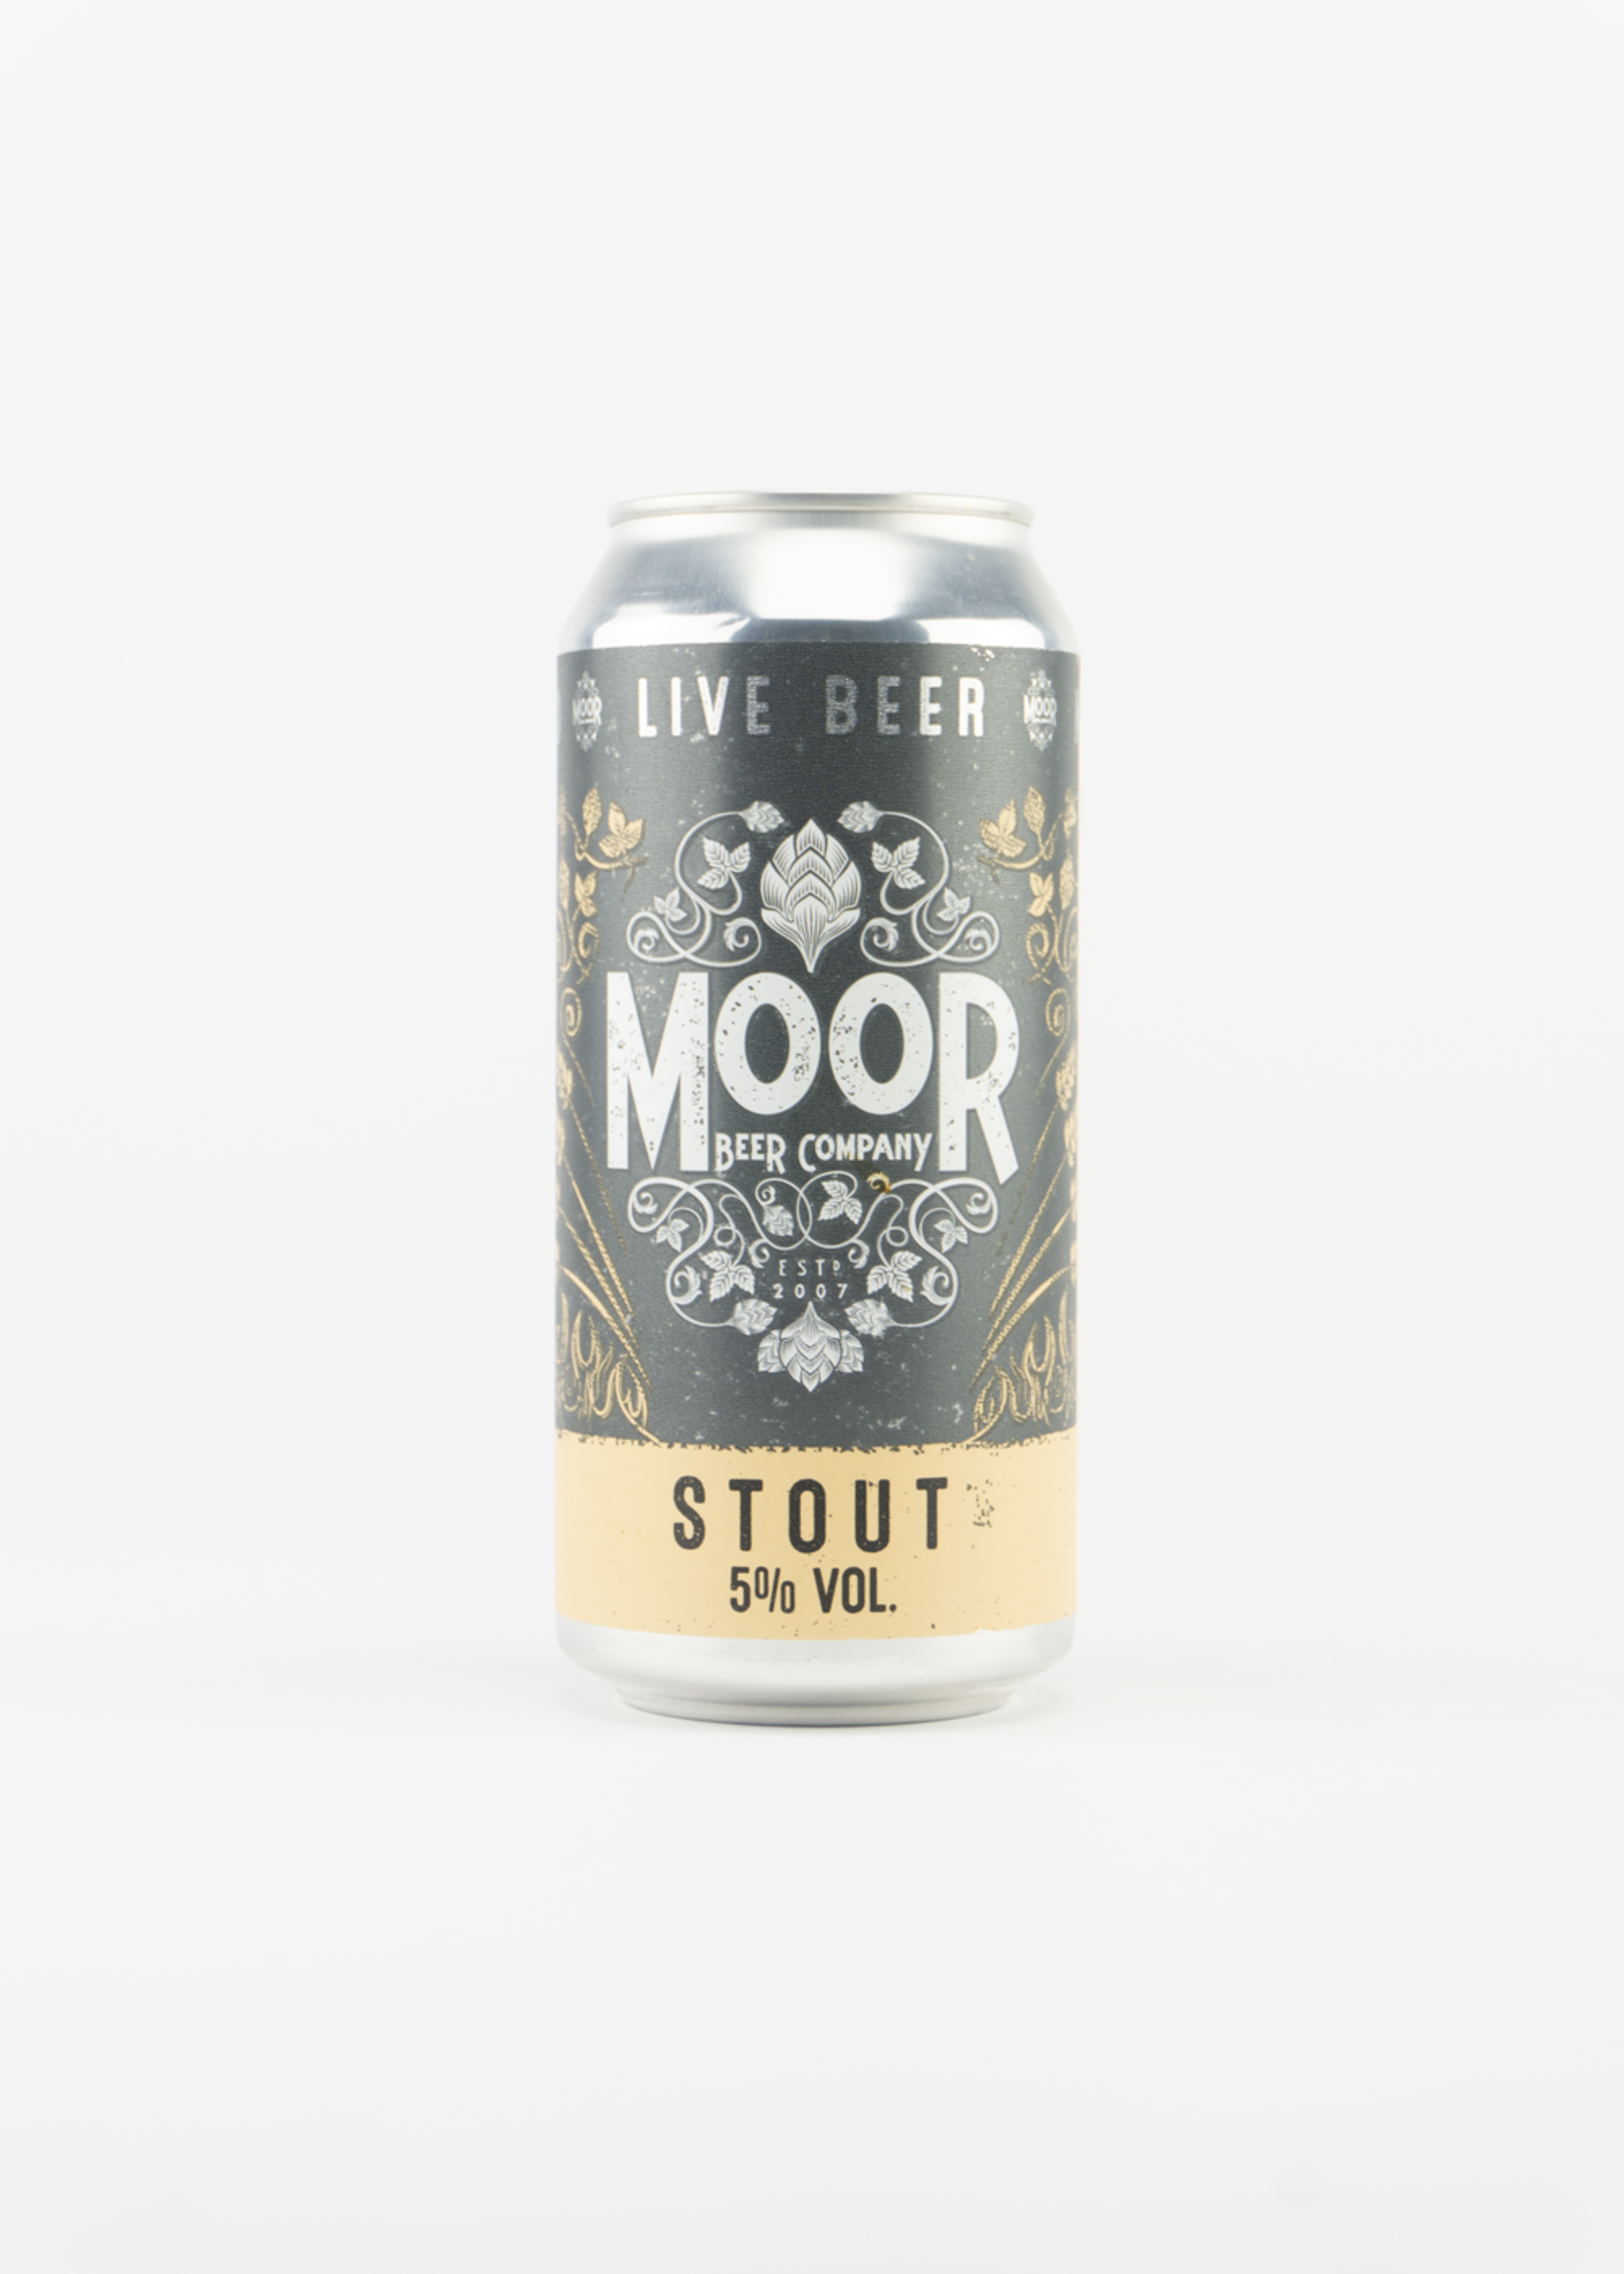 Moor Moor Stout